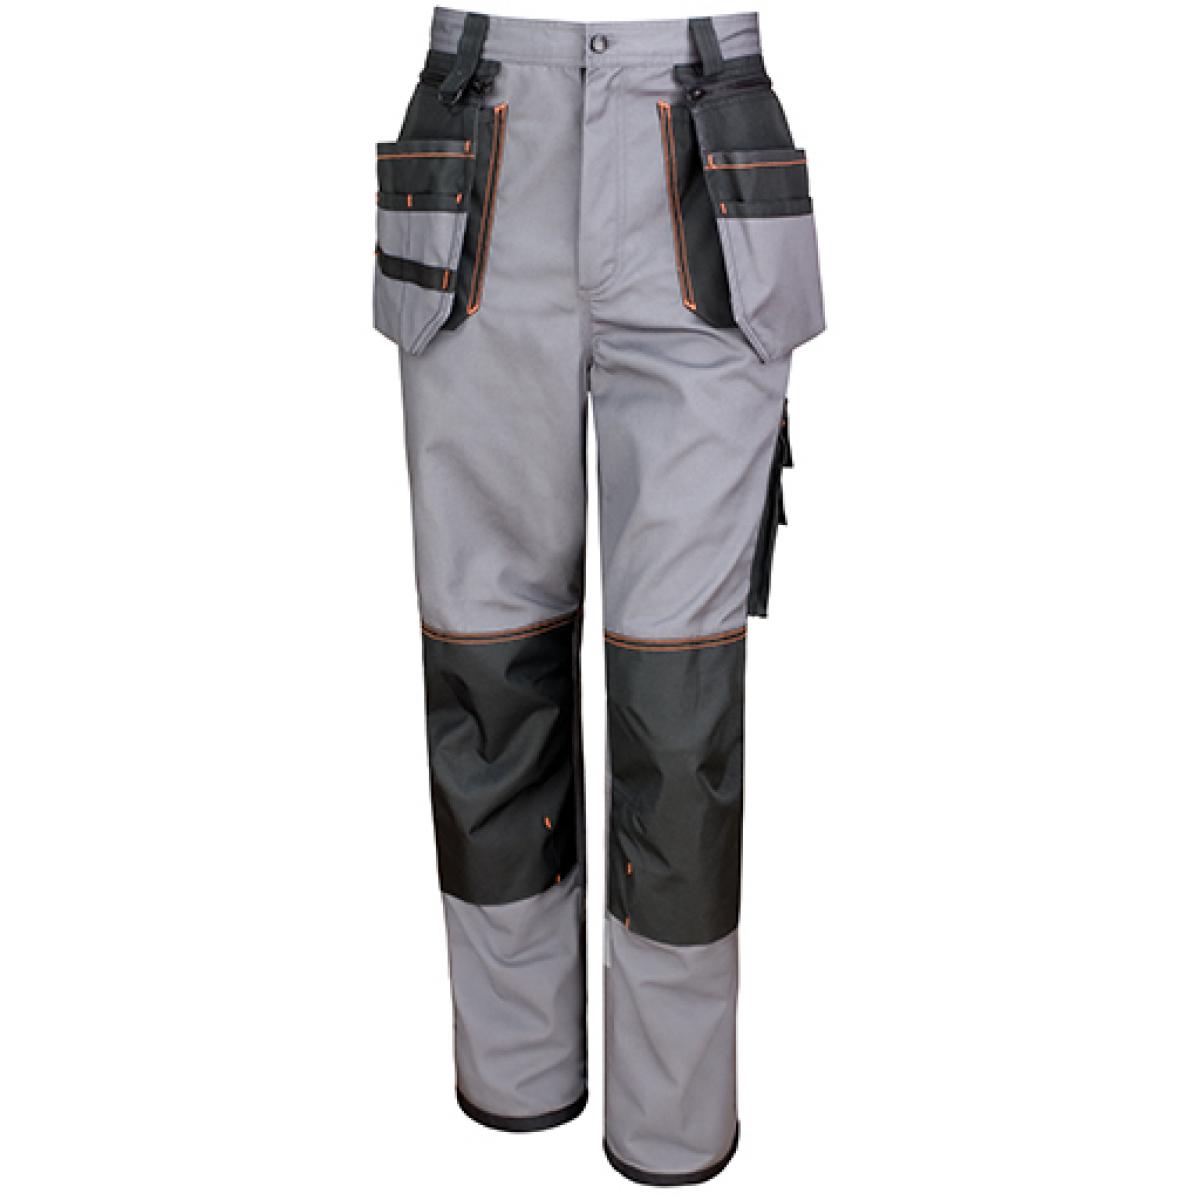 Hersteller: Result WORK-GUARD Herstellernummer: R324X Artikelbezeichnung: Herren X-Over Heavy Trouser Arbeitshose Farbe: Grey/Black